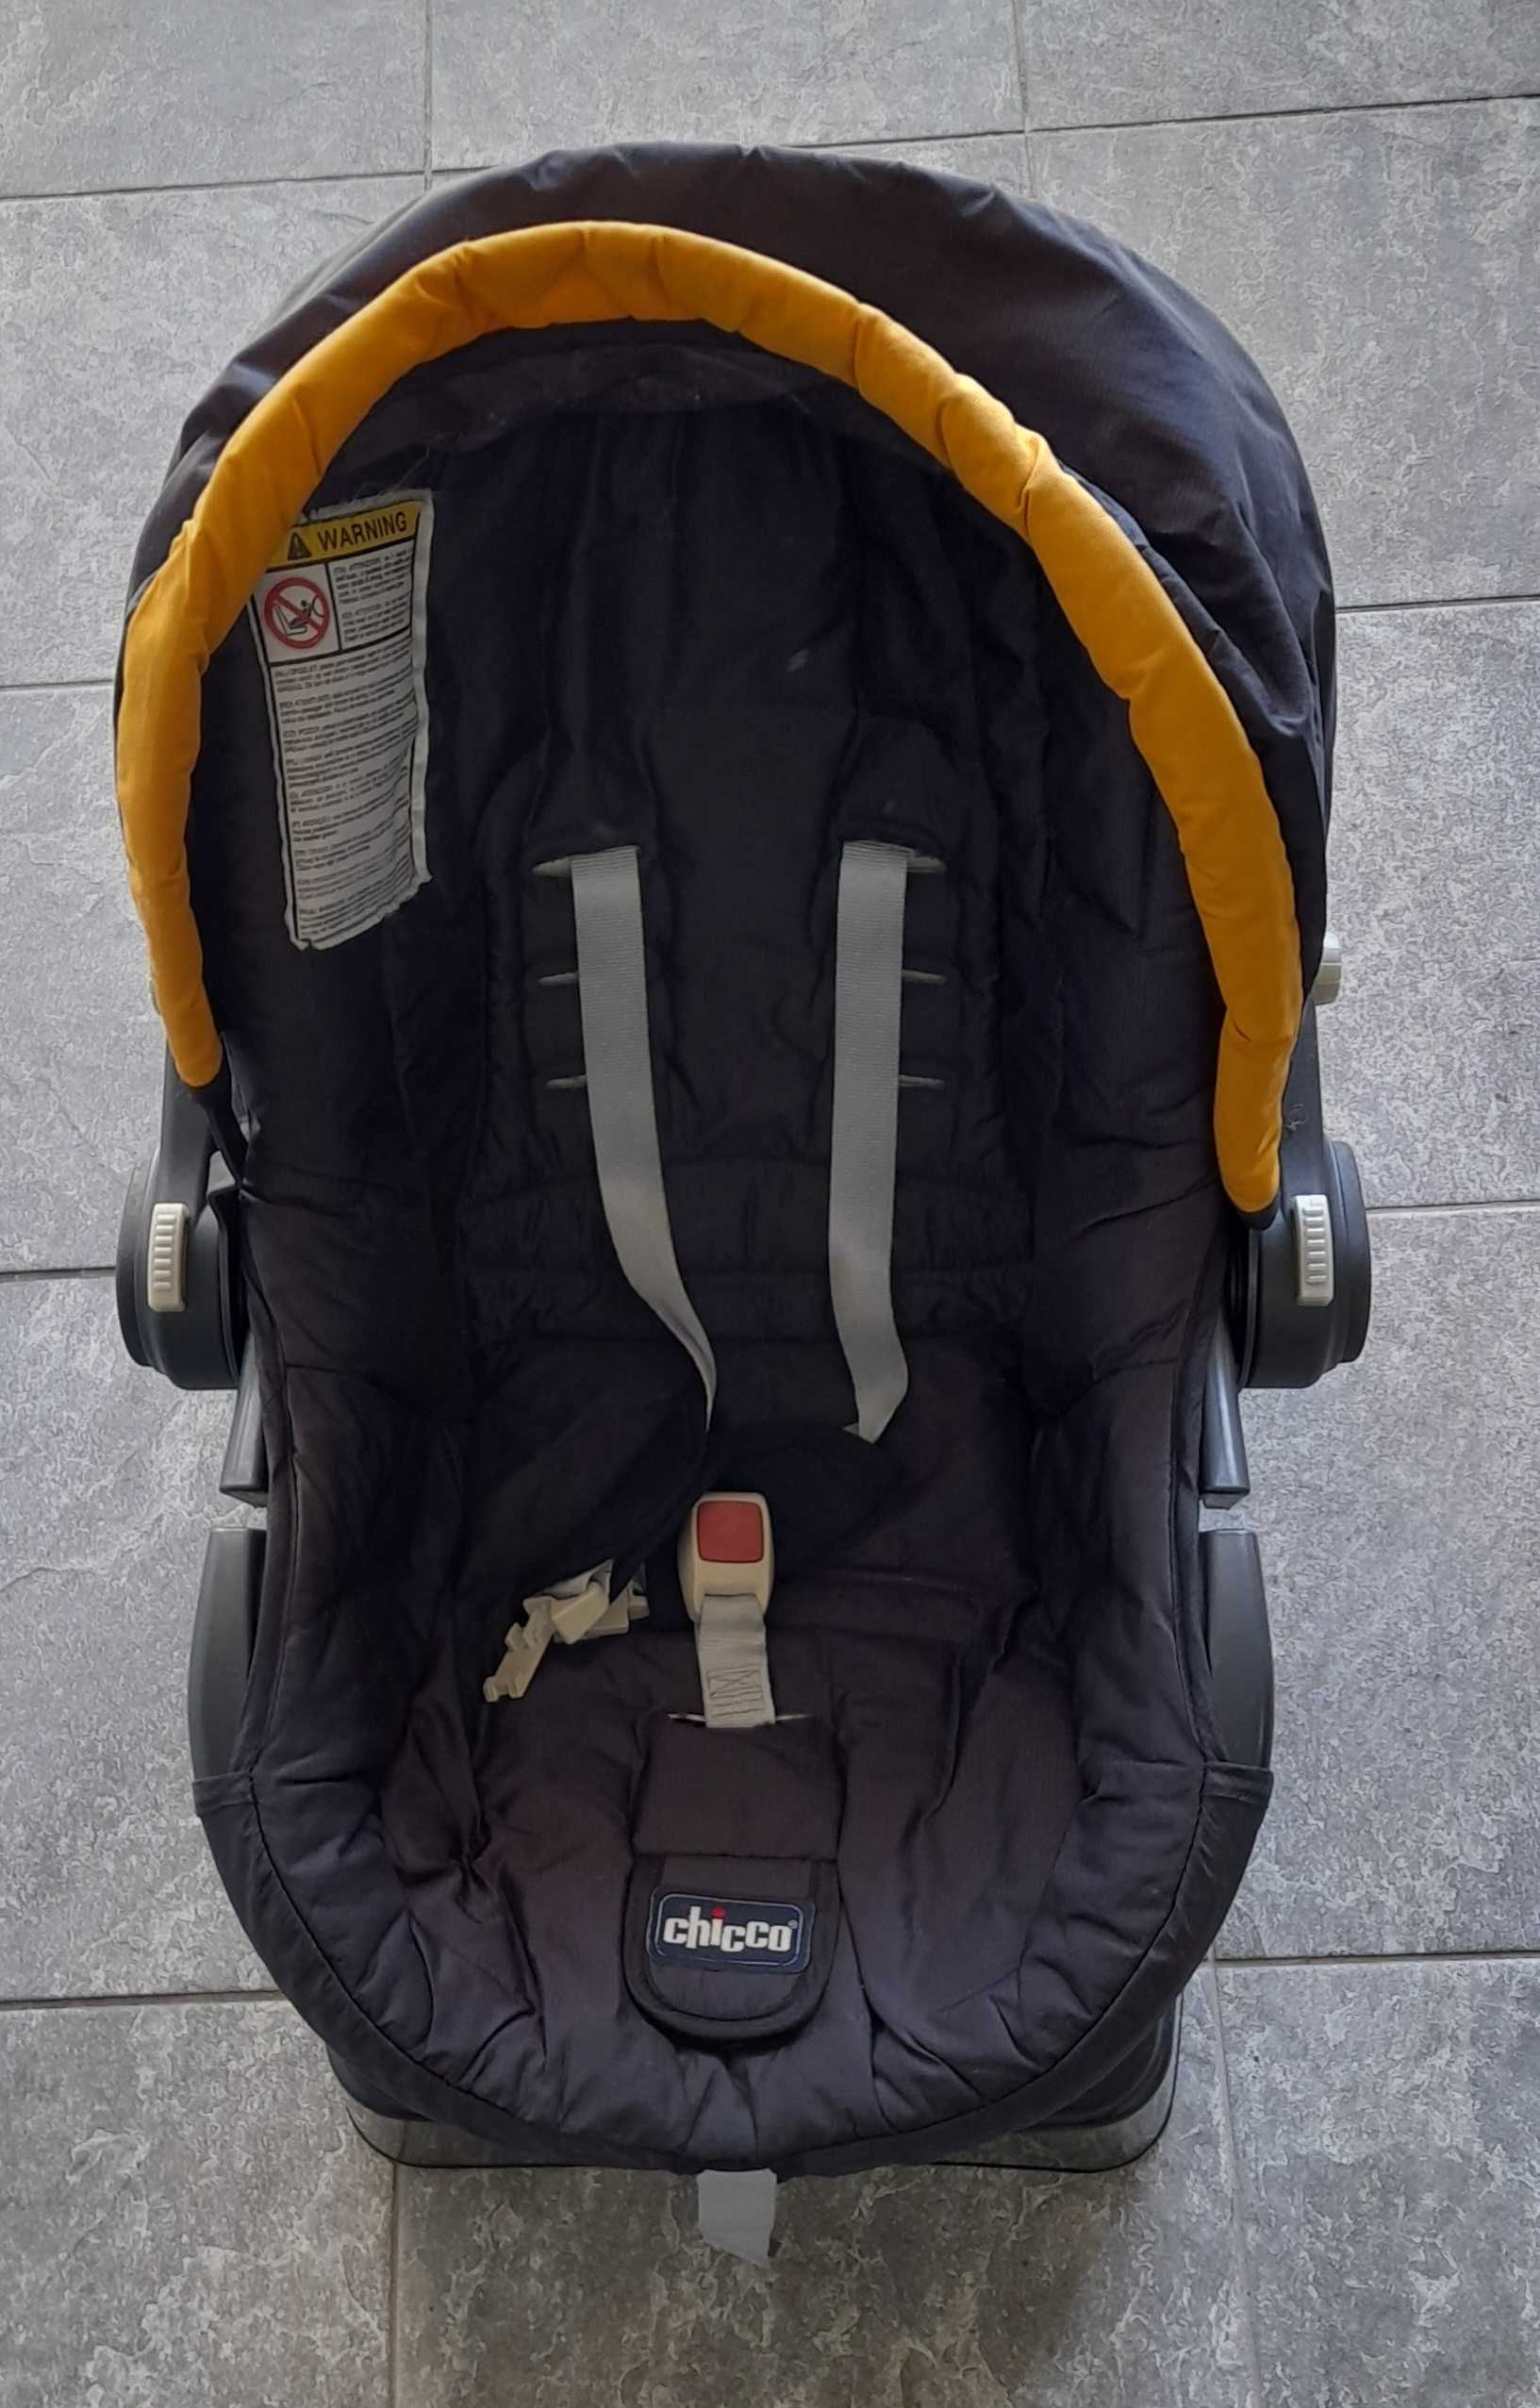 Cadeira auto para bebé E4 0-13kg (Chicco)